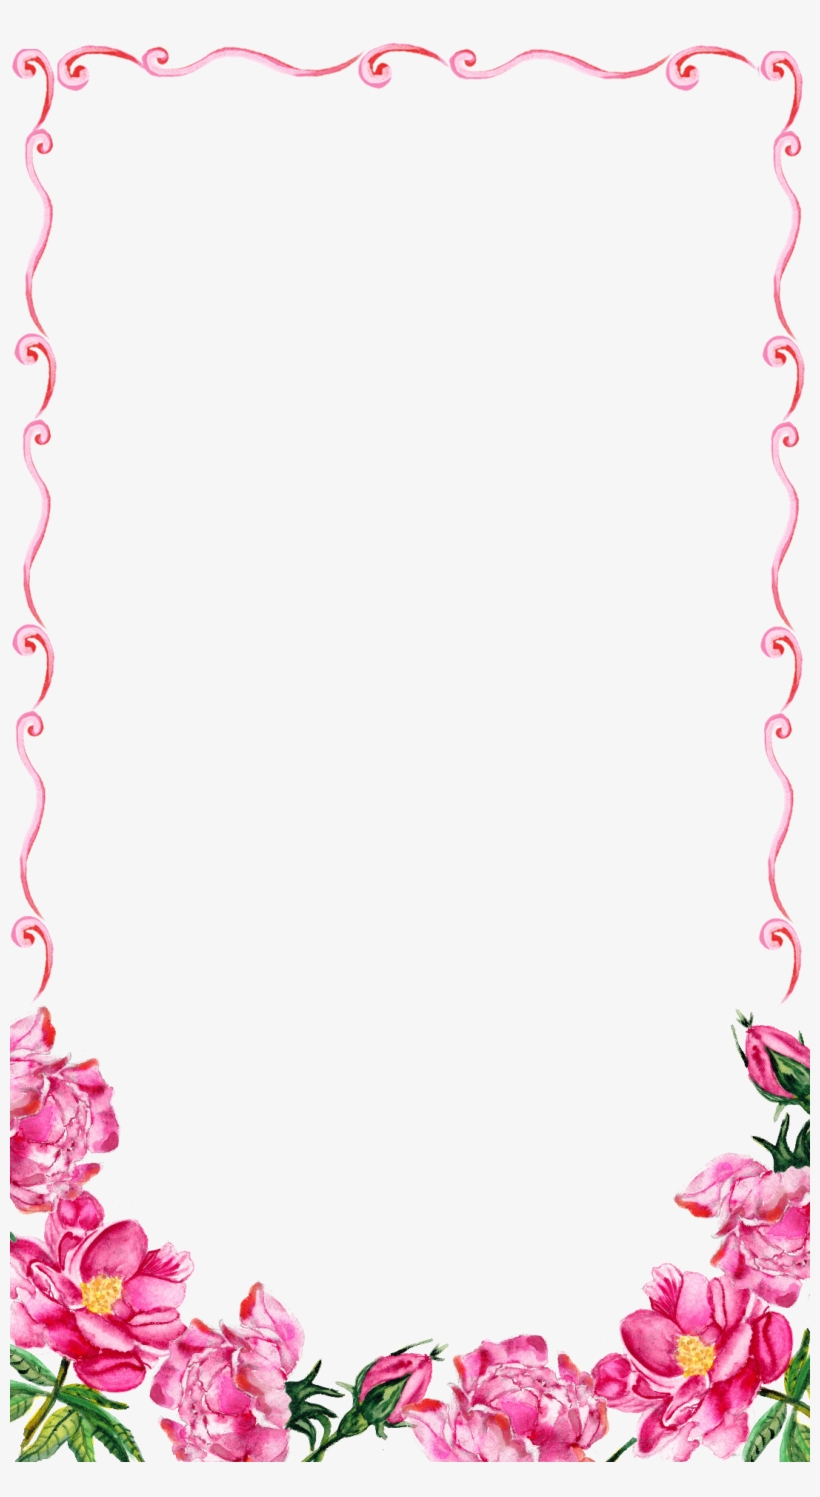 Pink Floral Border Png Transparent Image - Pink Floral Border Png, transparent png #48461